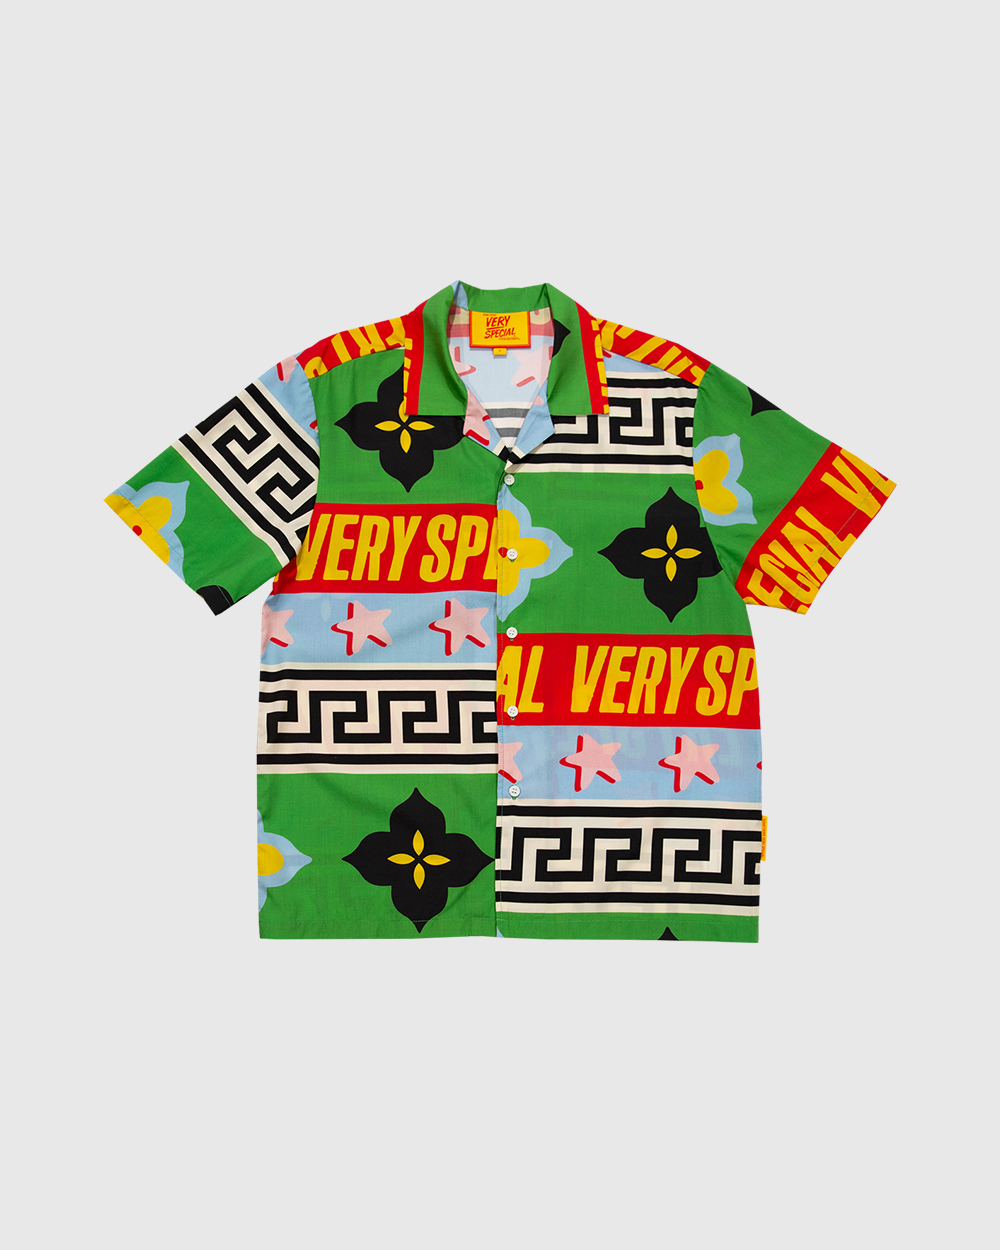 "Very Geo 2.0" Resort Shirt